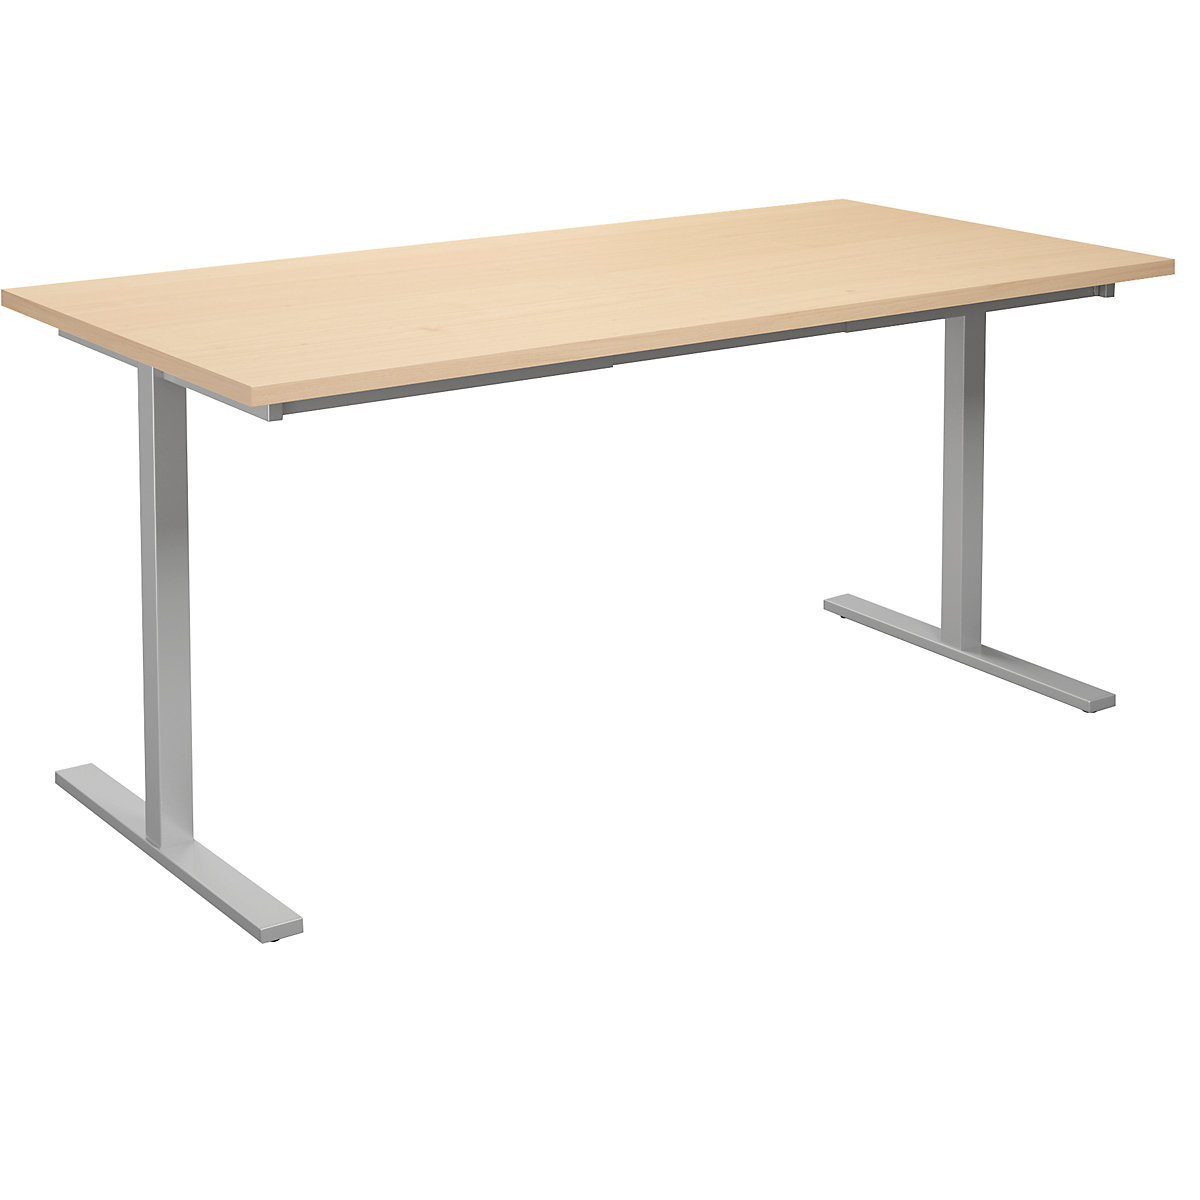 DUO-T multi-purpose desk, straight tabletop, WxD 1600 x 800 mm, birch, silver-5